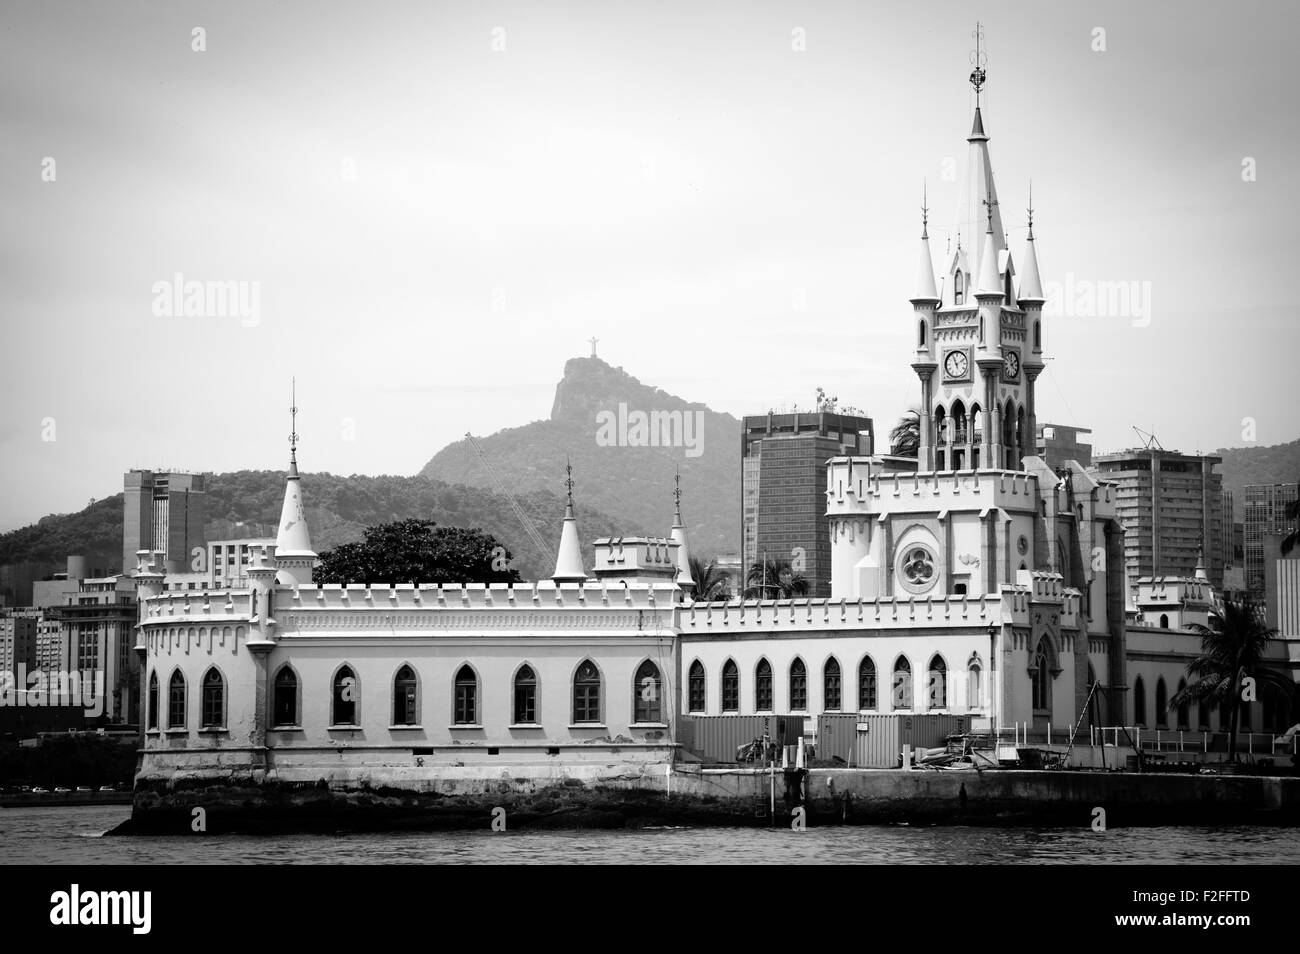 Vue panoramique en noir et blanc d'anciens bâtiments sur l'île en Guanbara Bay, Rio de Janeiro, Brésil. Banque D'Images